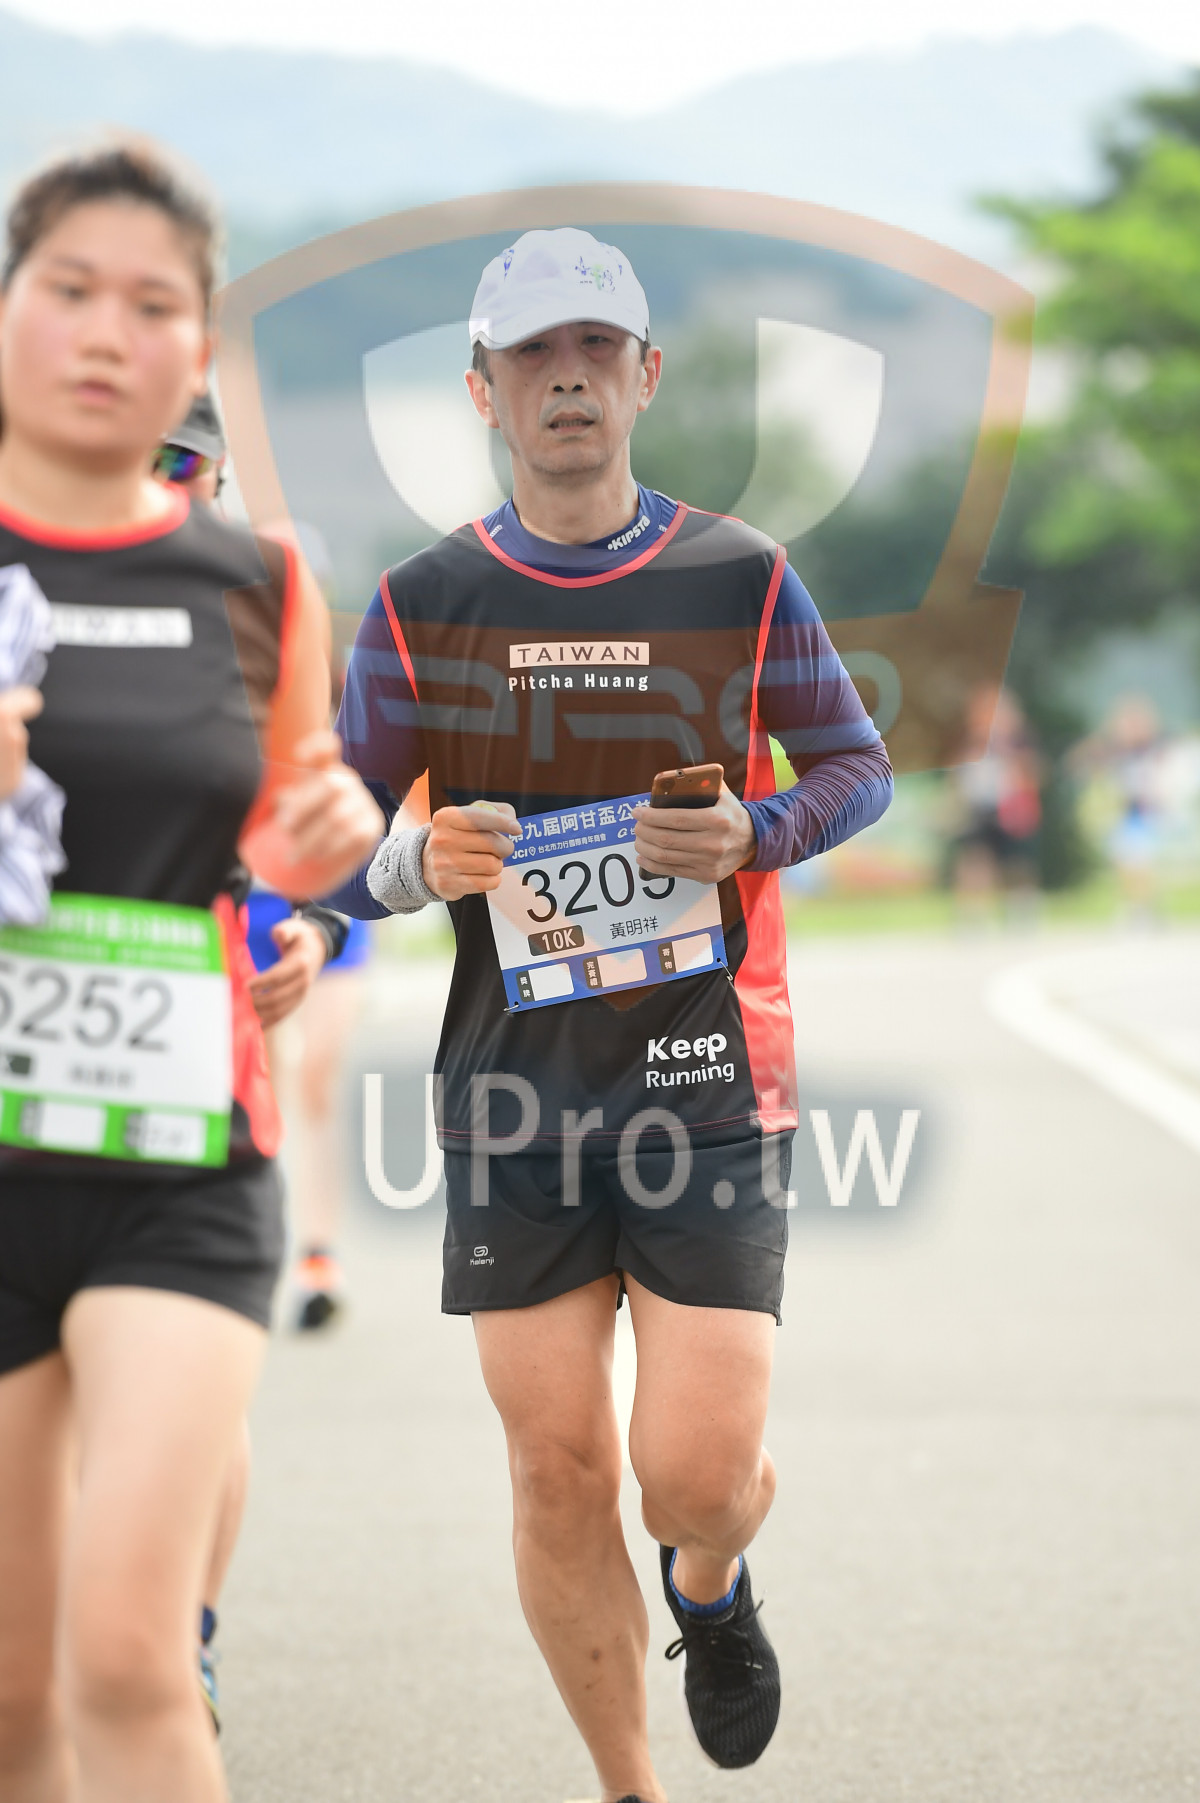 TAIWAN,Pitcha Huang,,3208,252,Keep,Running|終點1|中年人